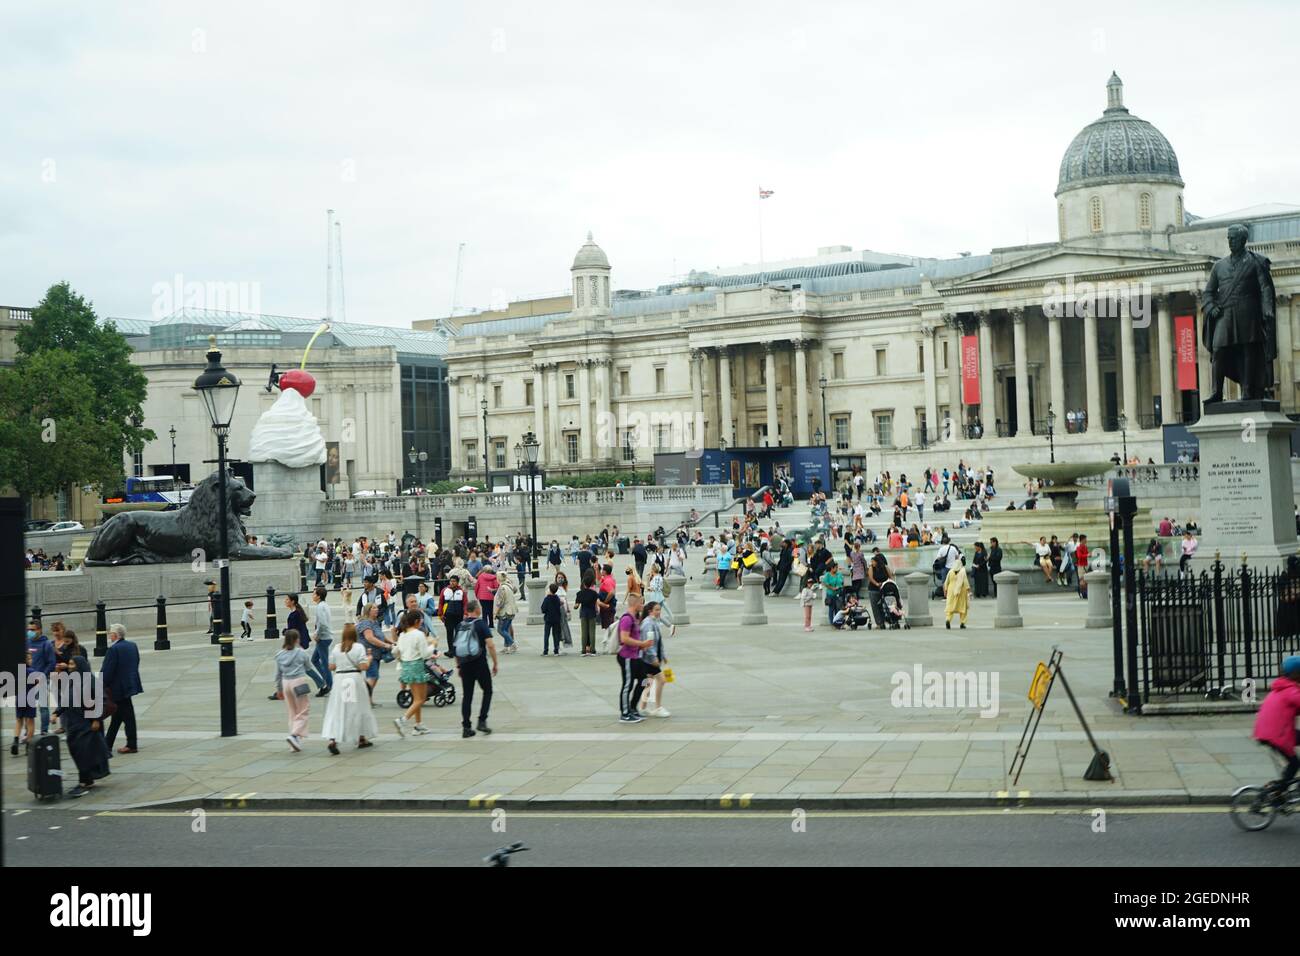 Vue panoramique sur Trafalgar Square à Westminster, Londres, Angleterre, Royaume-Uni Banque D'Images